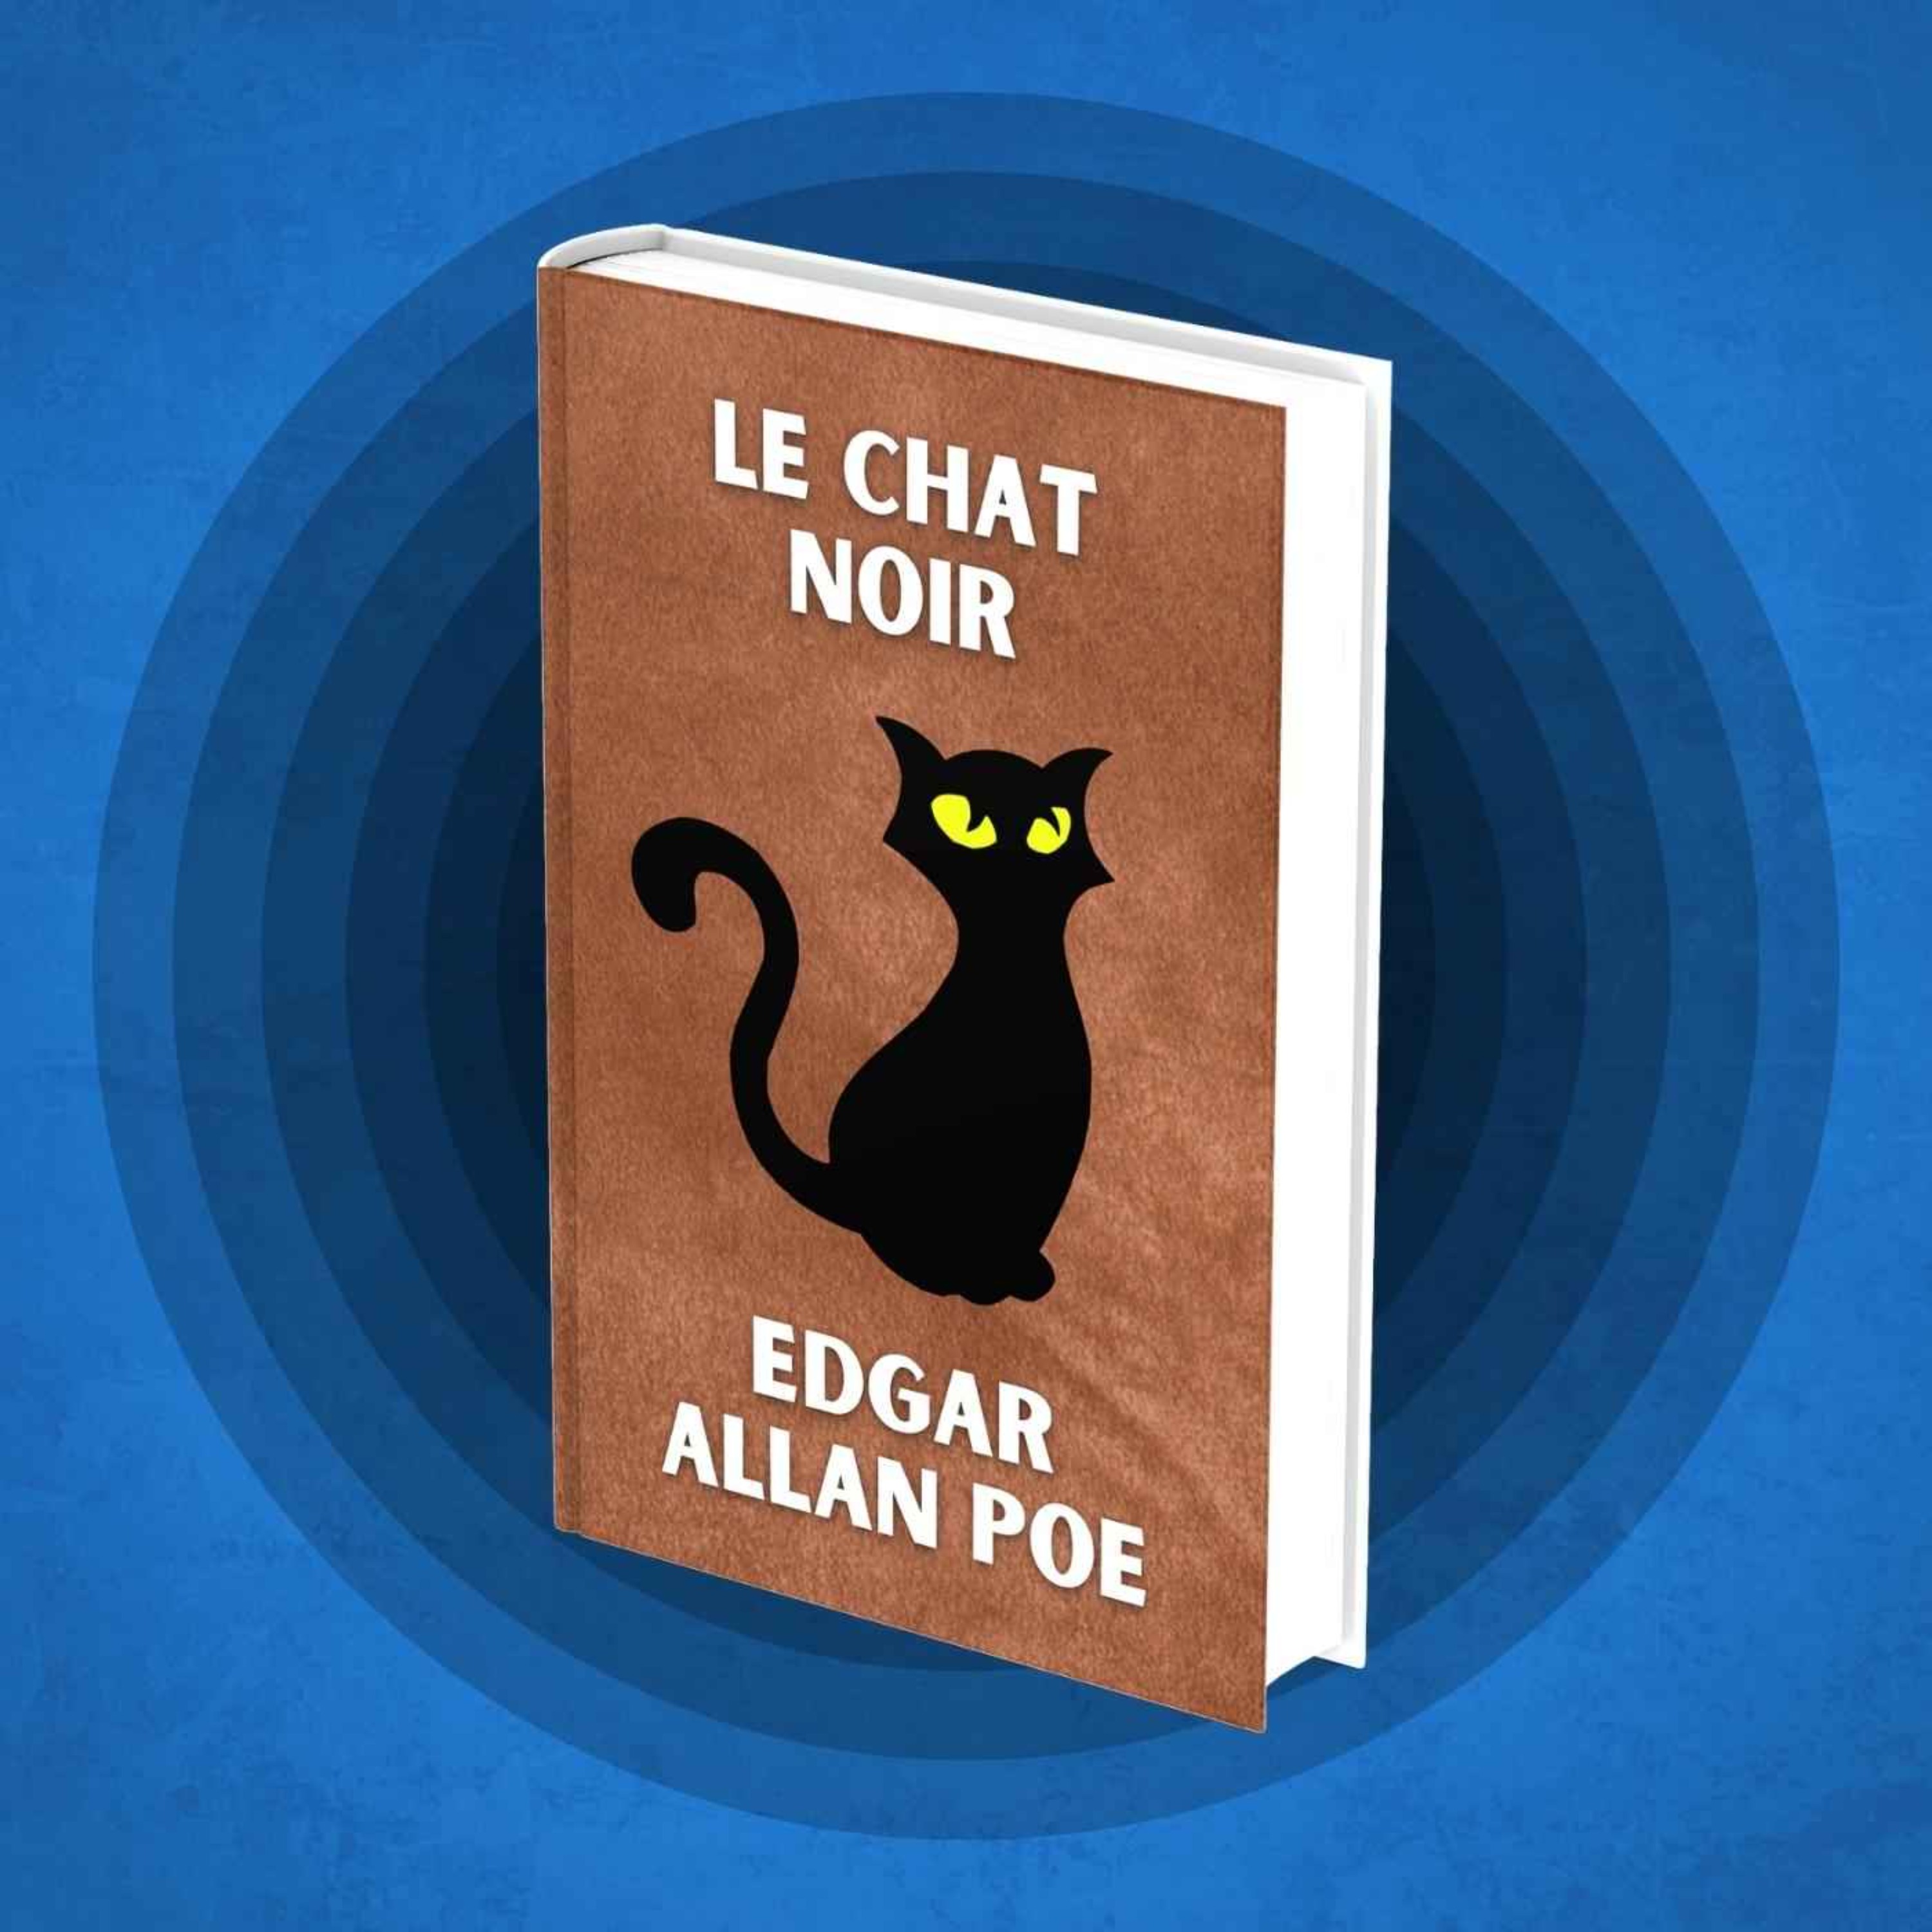 Le Chat noir – Edgar Allan Poe